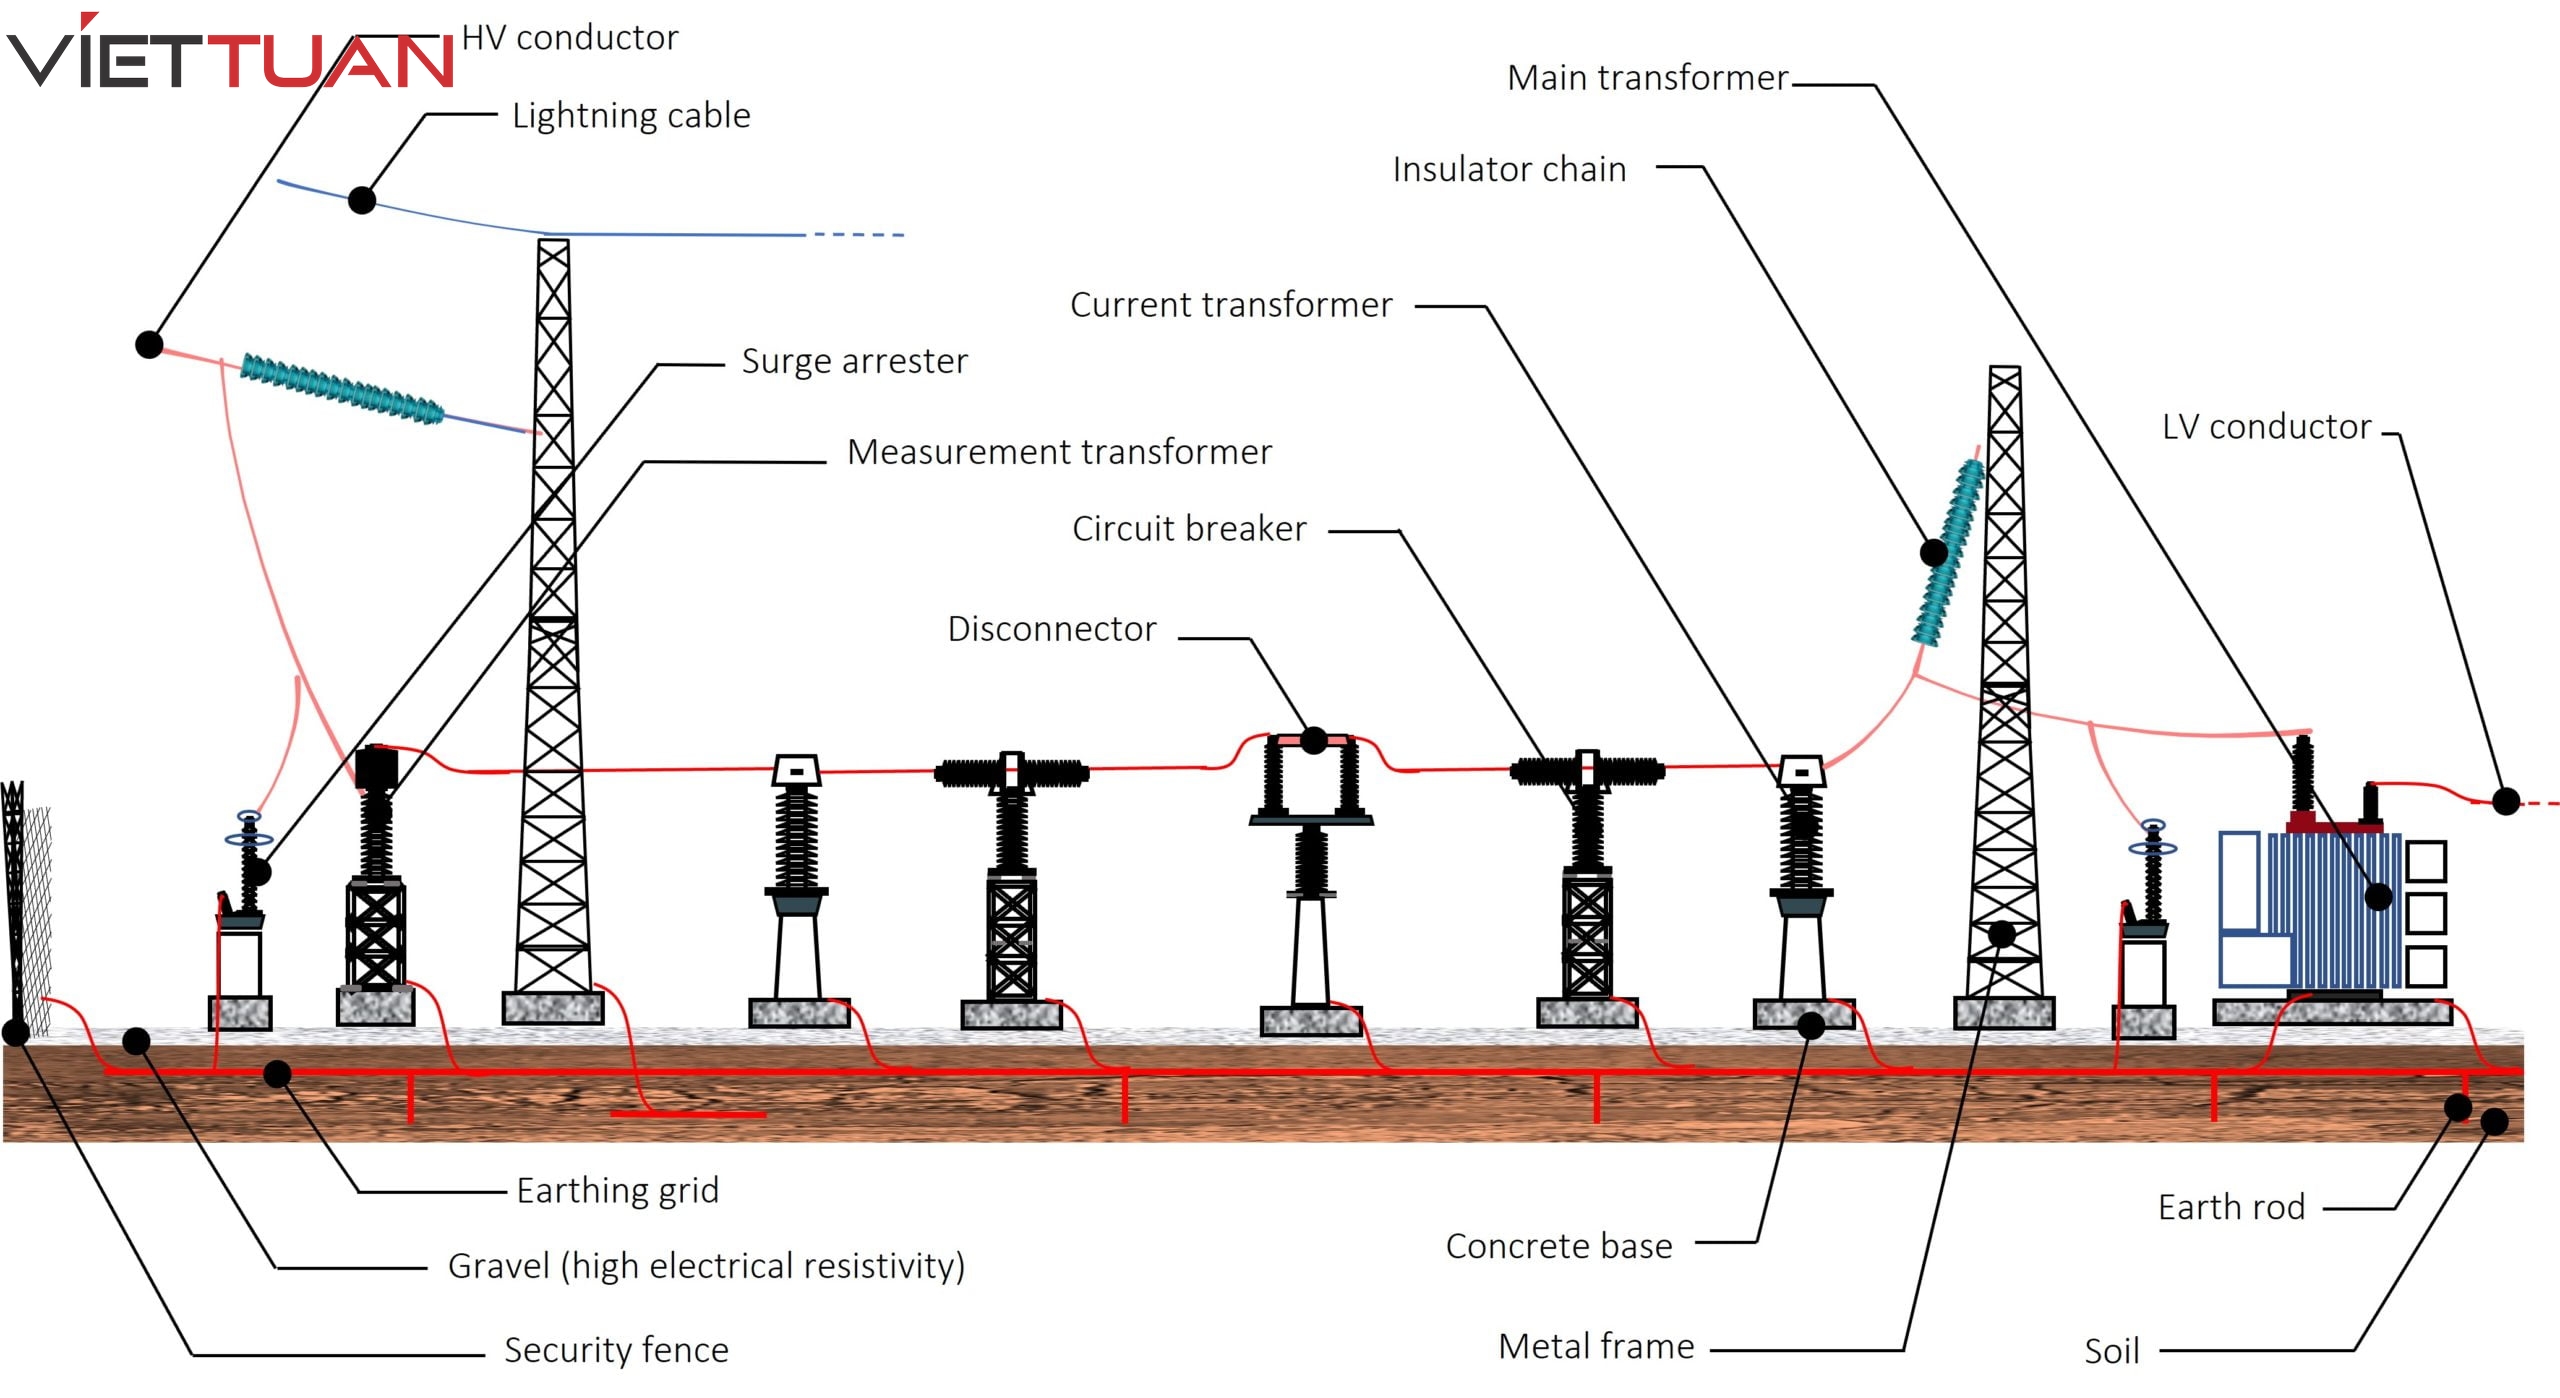 hệ thống tiếp địa tiêu chuẩn cho nhà máy cung cấp điện